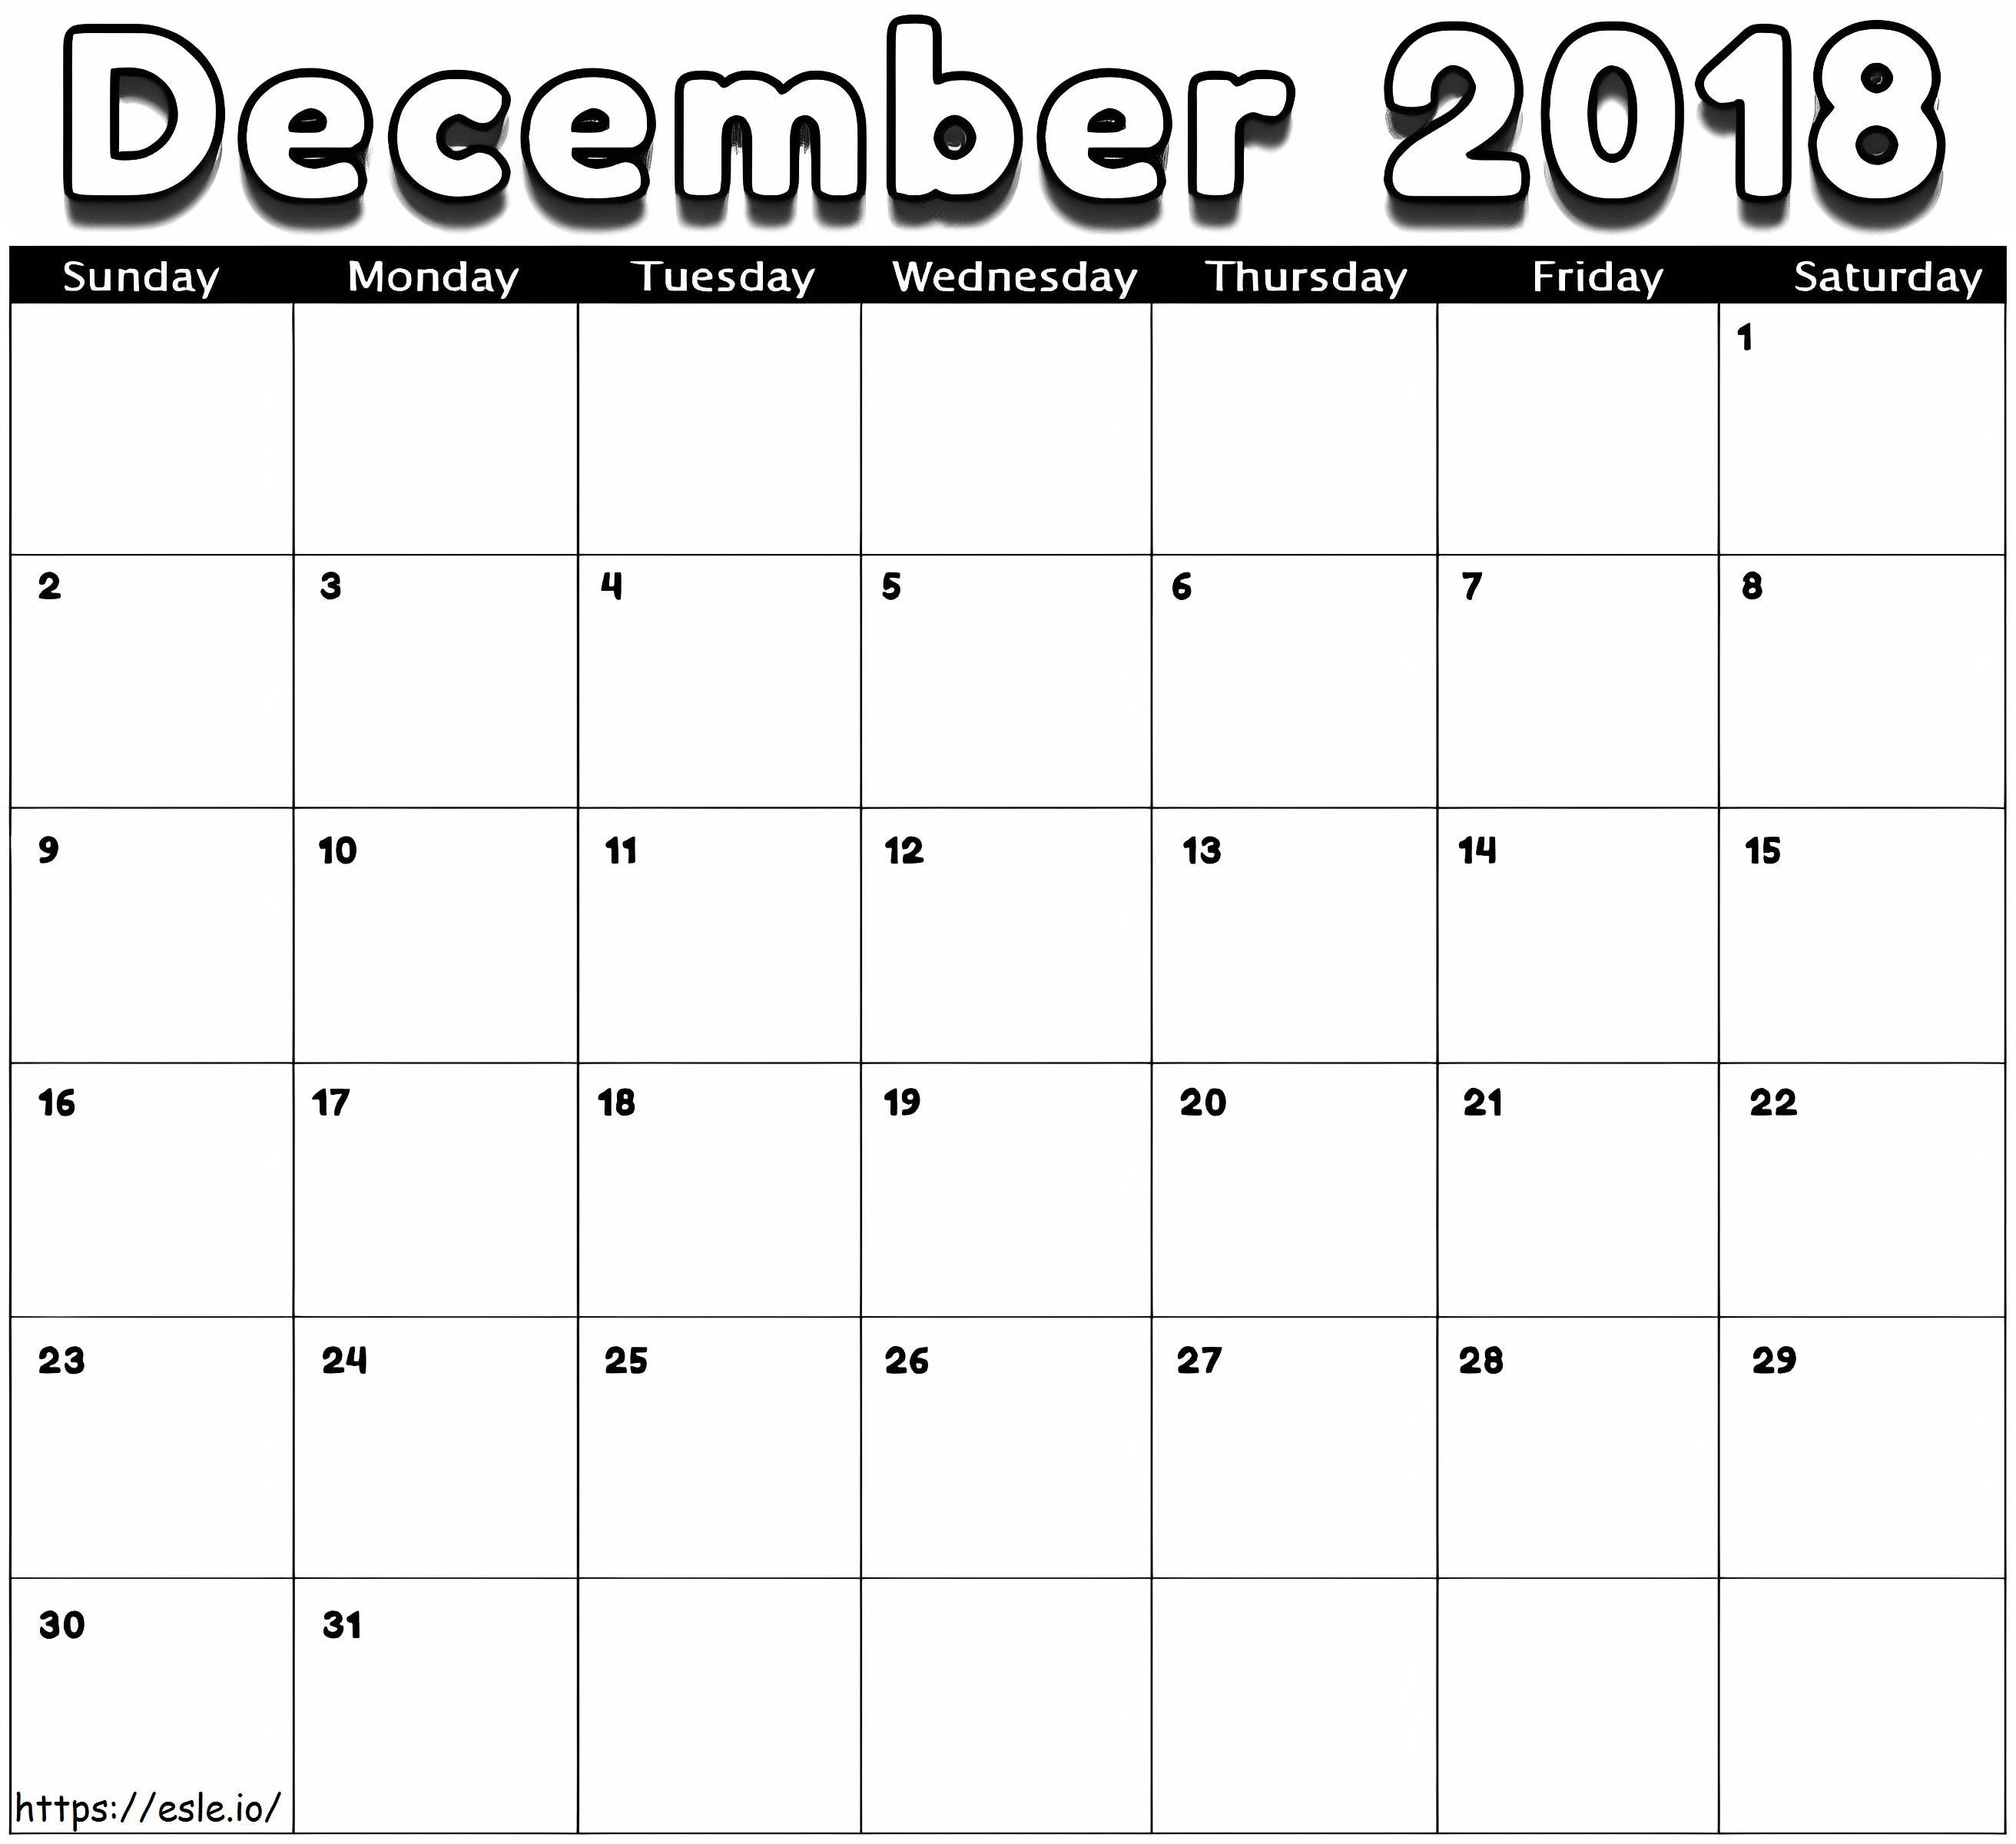 Kalendarz na grudzień 2018 r kolorowanka